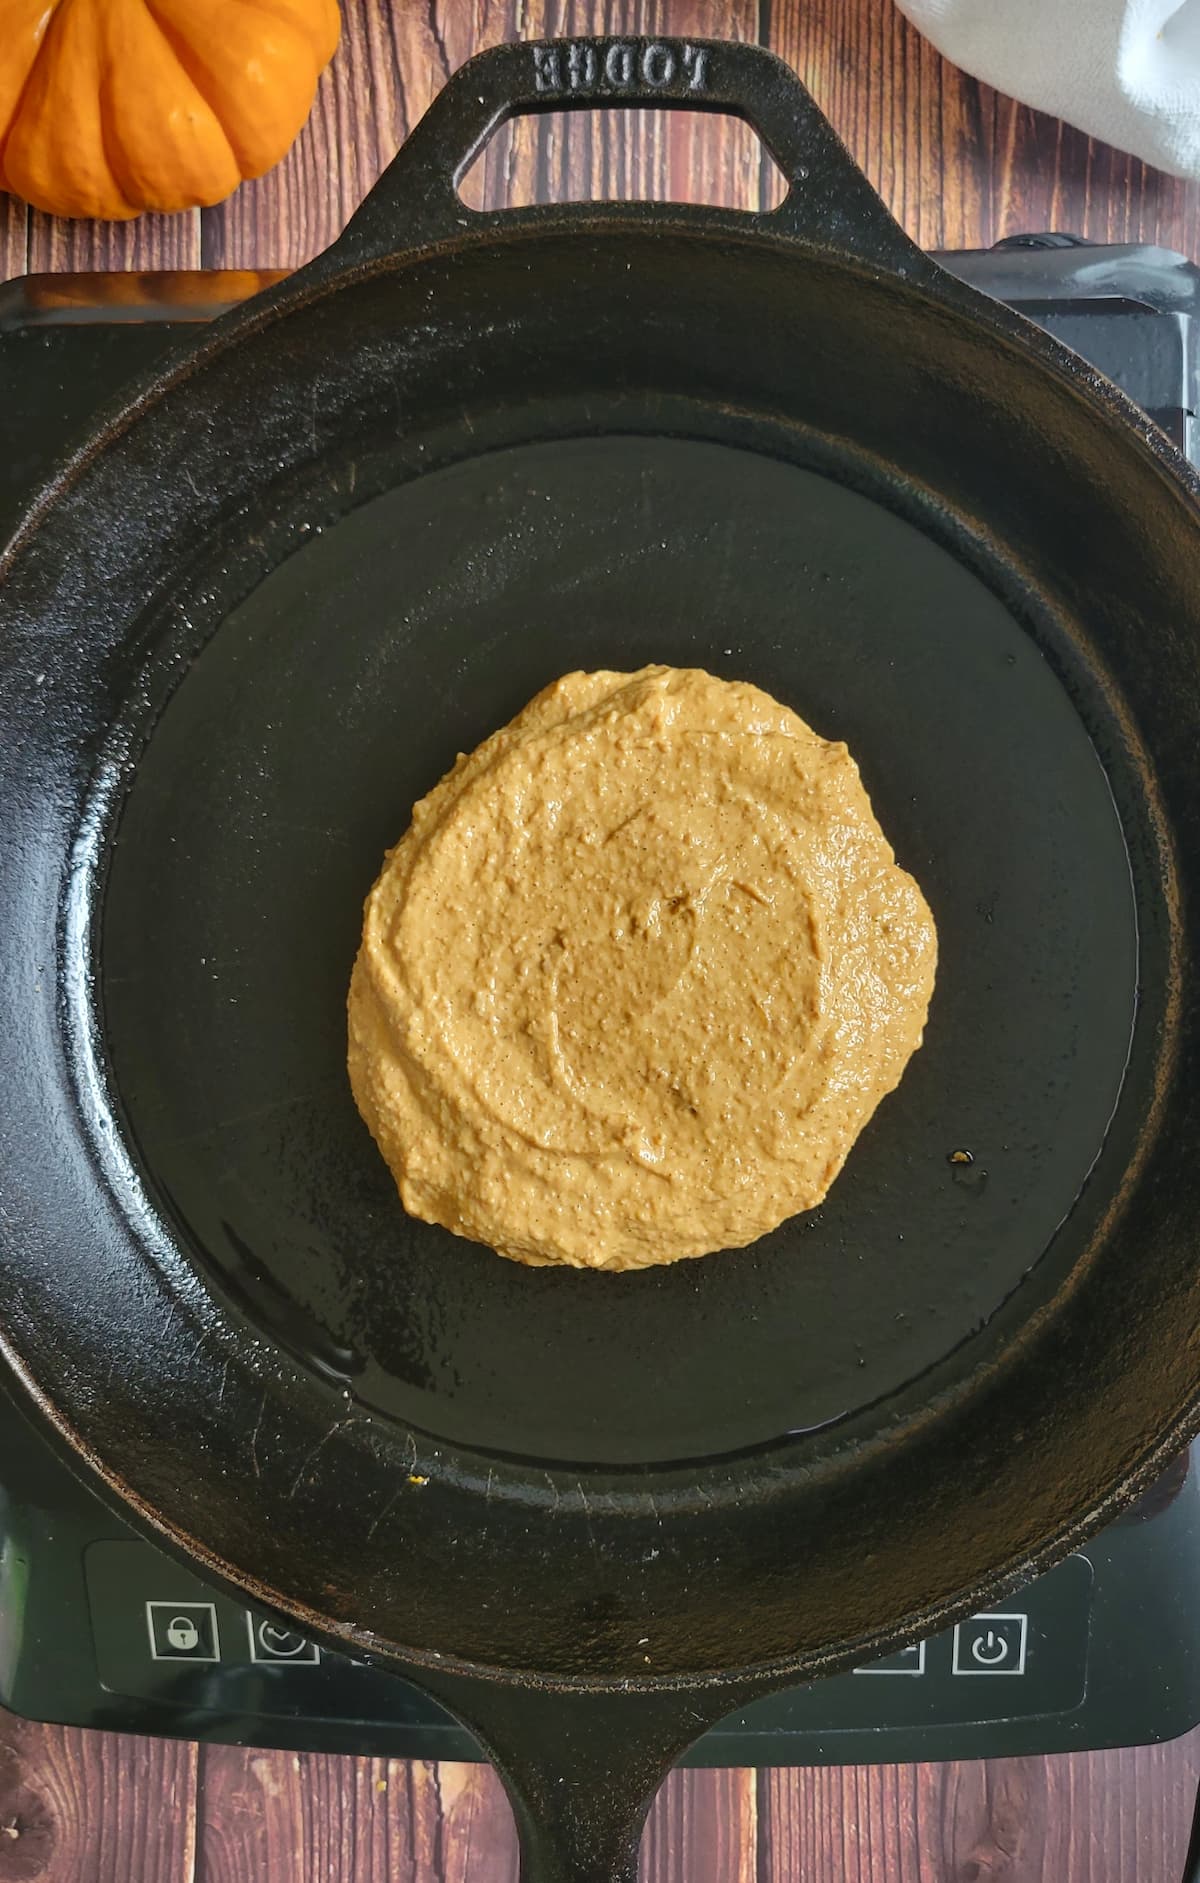 orange pancake cooking in a skillet